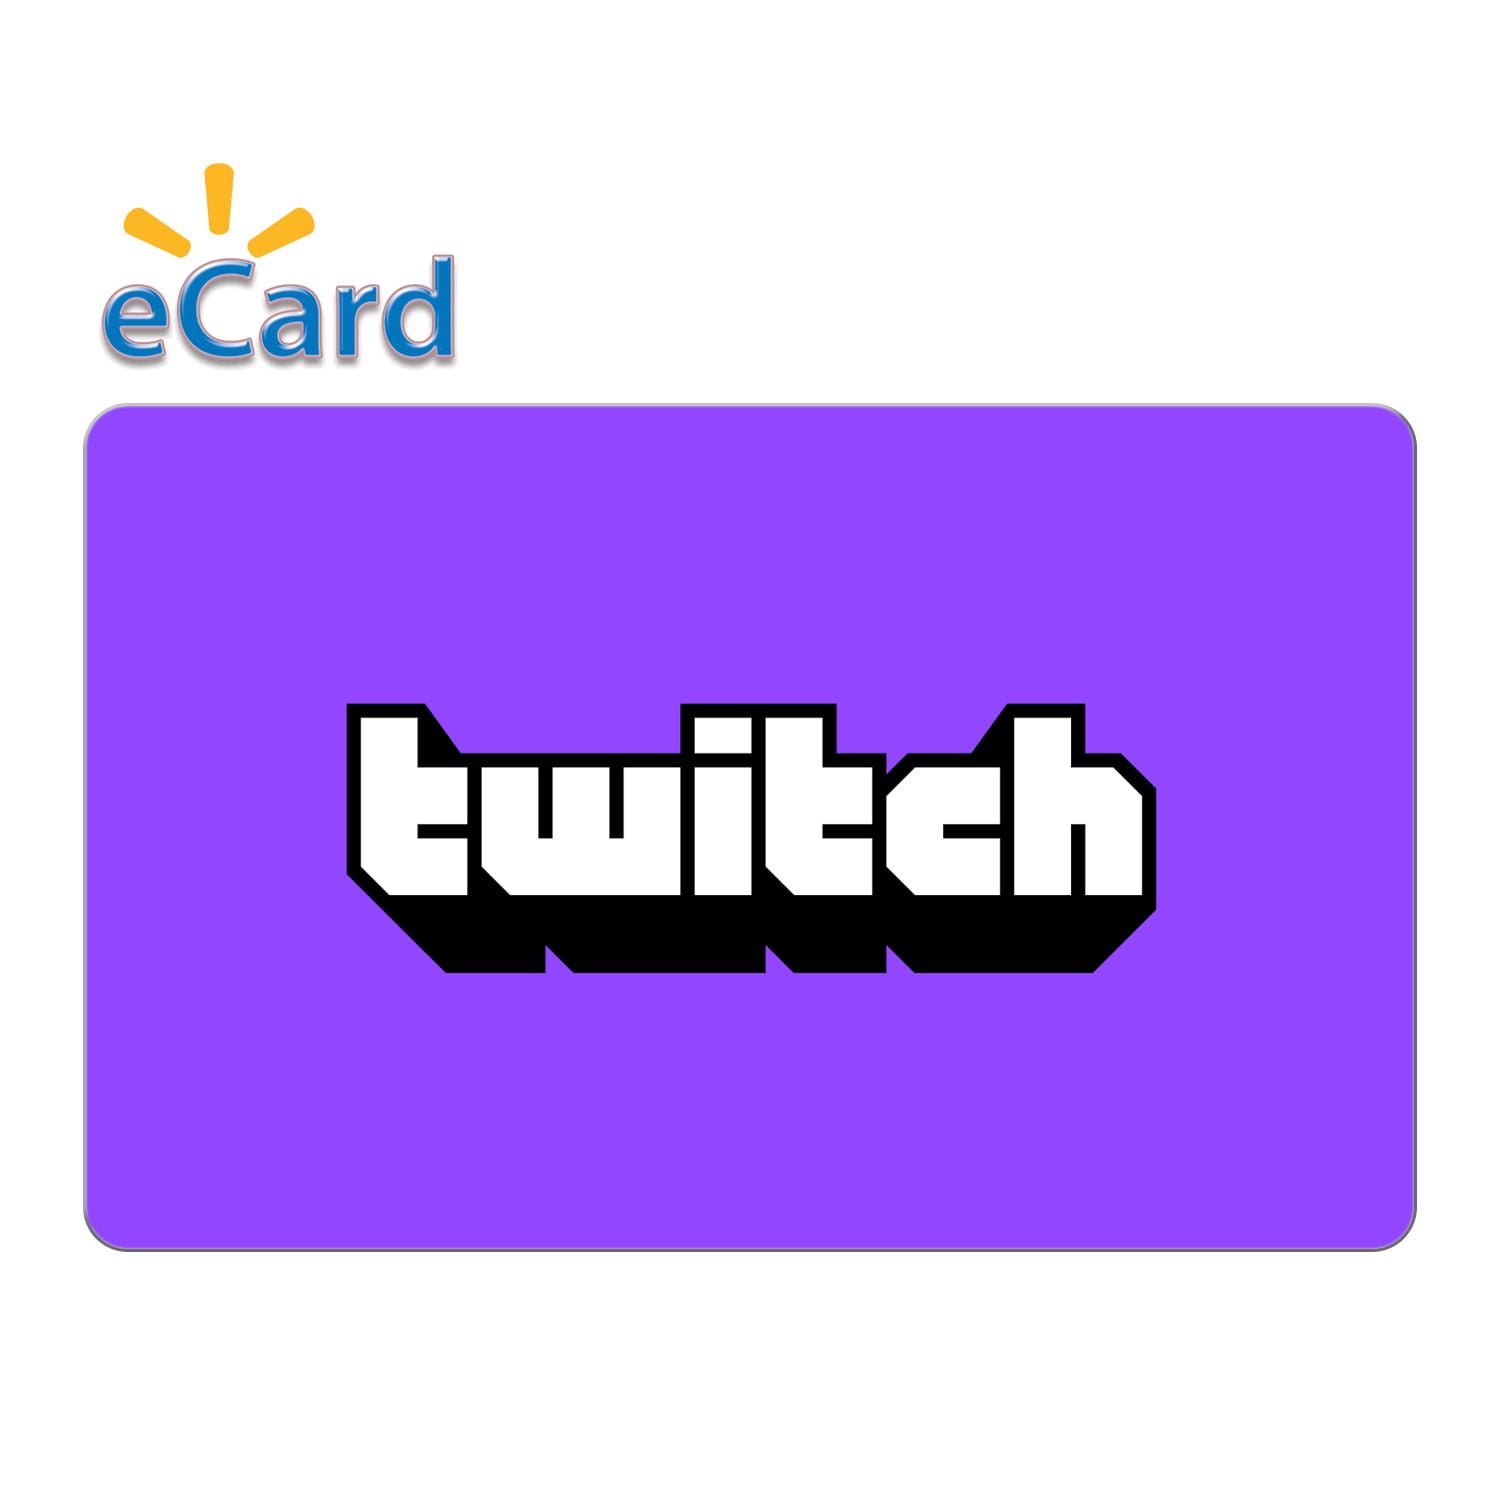 Card $25 eGift Twitch